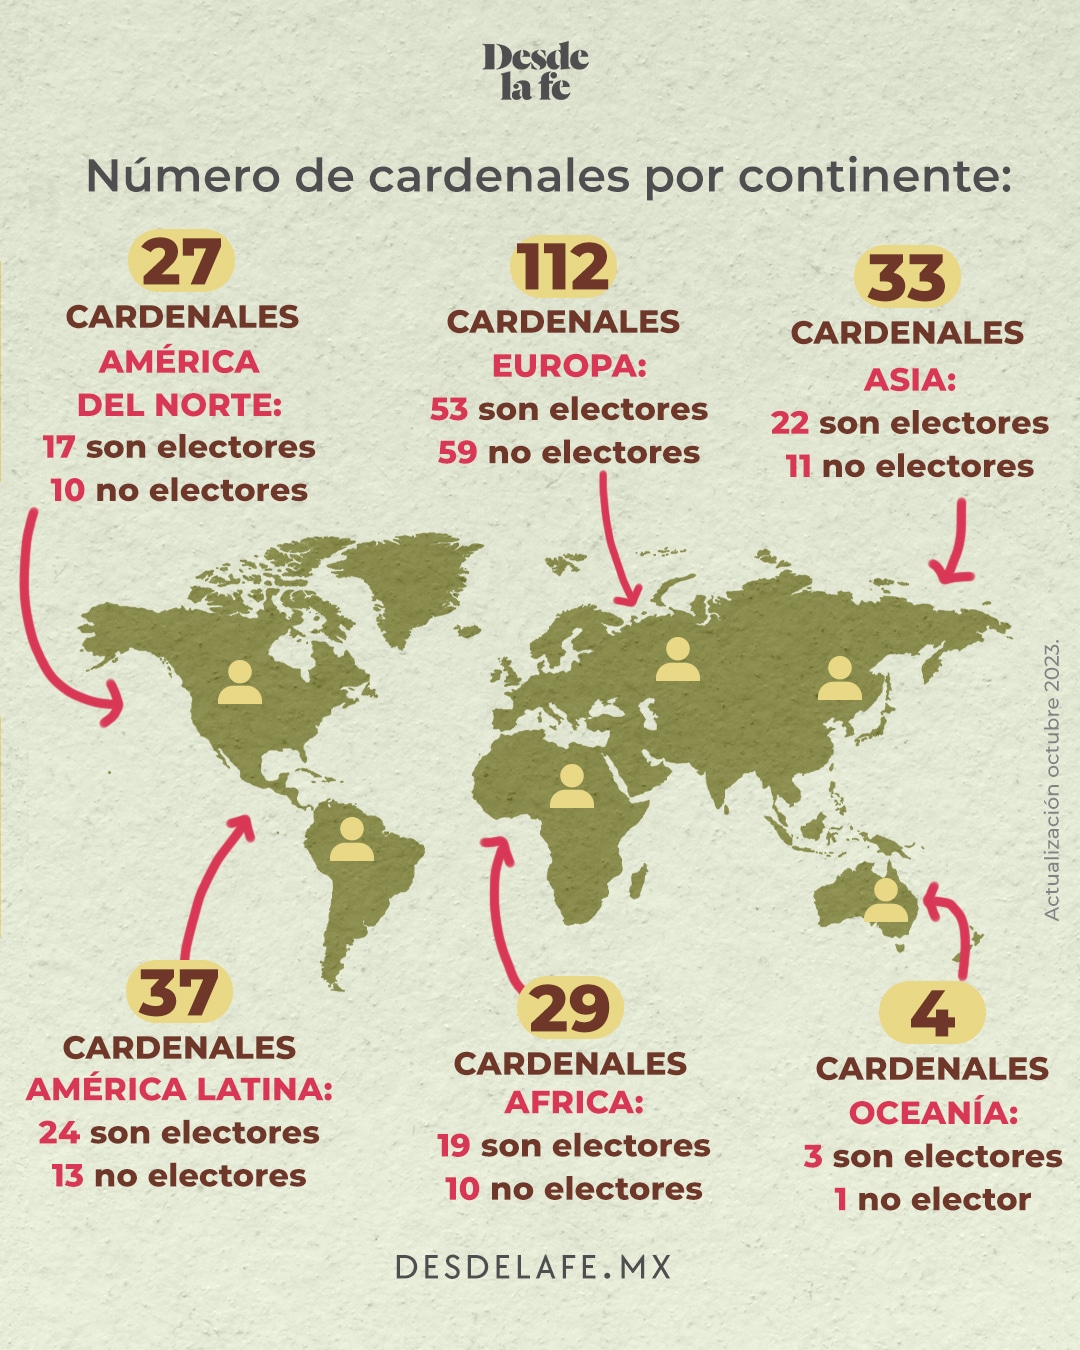 Cardenales de la Iglesia Católica por continentes y regiones